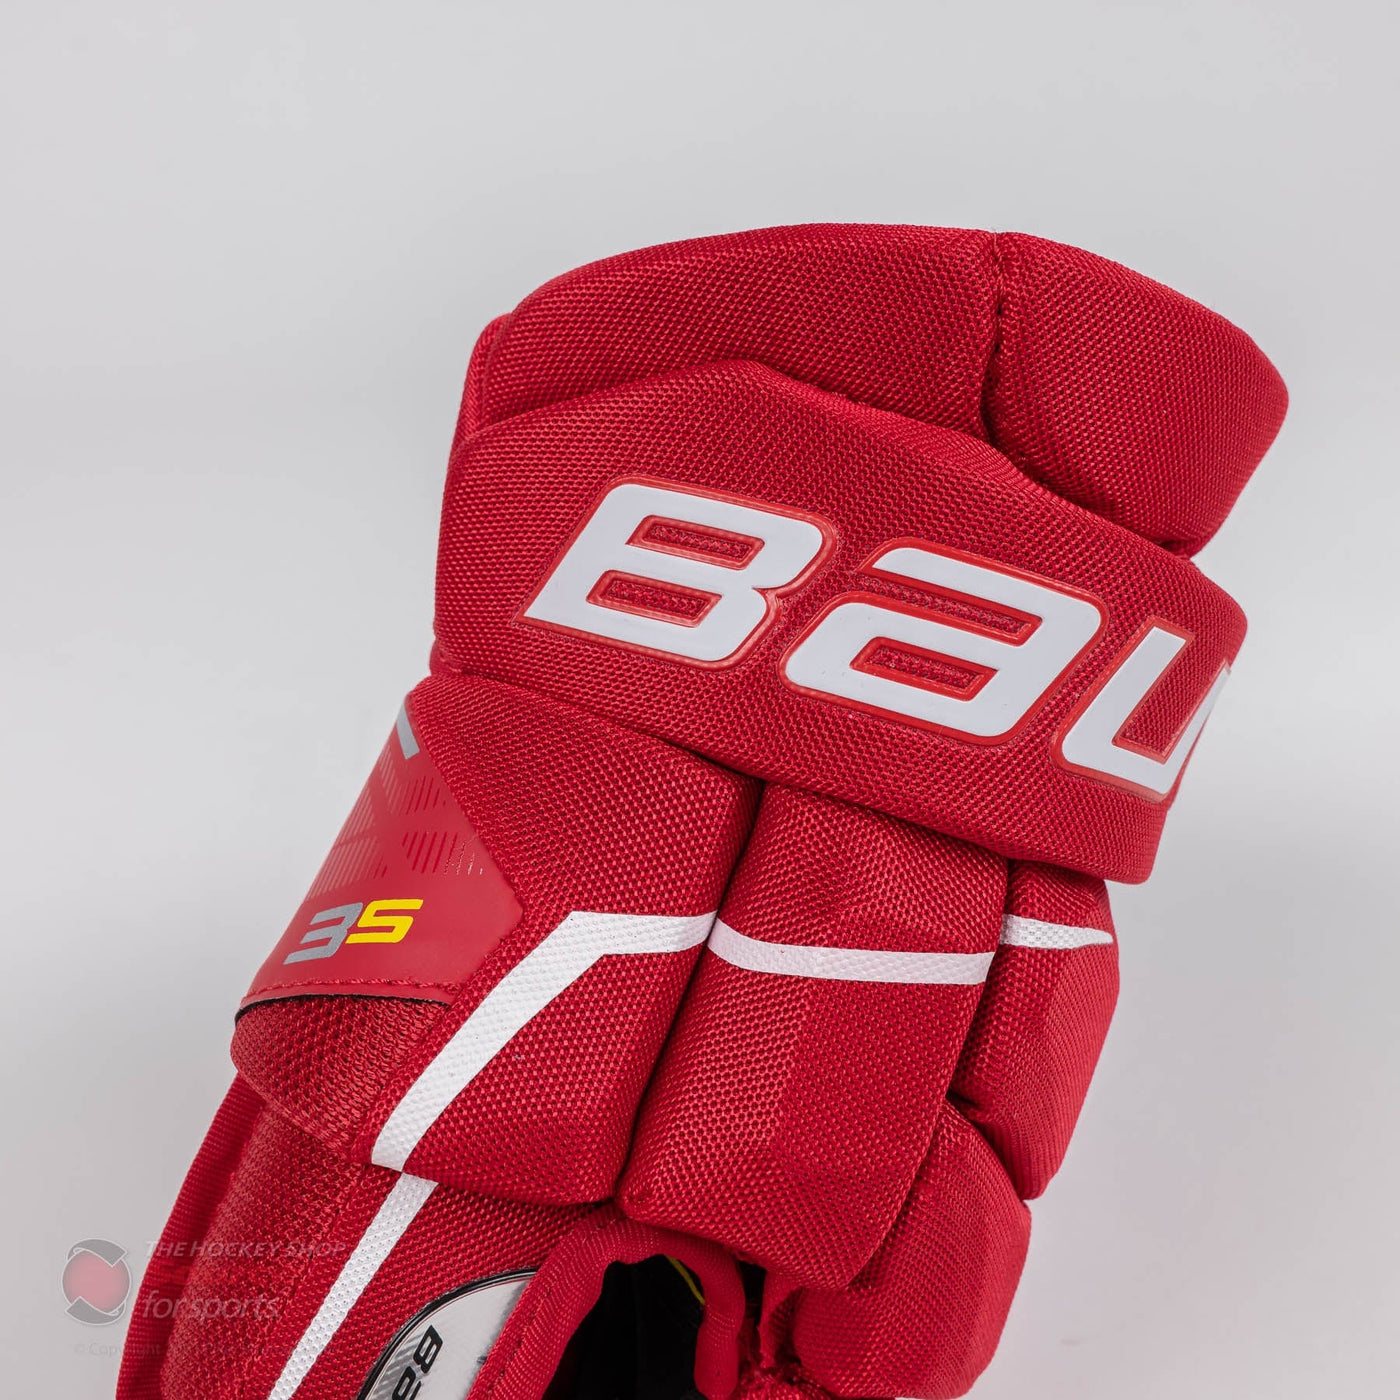 Bauer Supreme 3S Junior Hockey Gloves